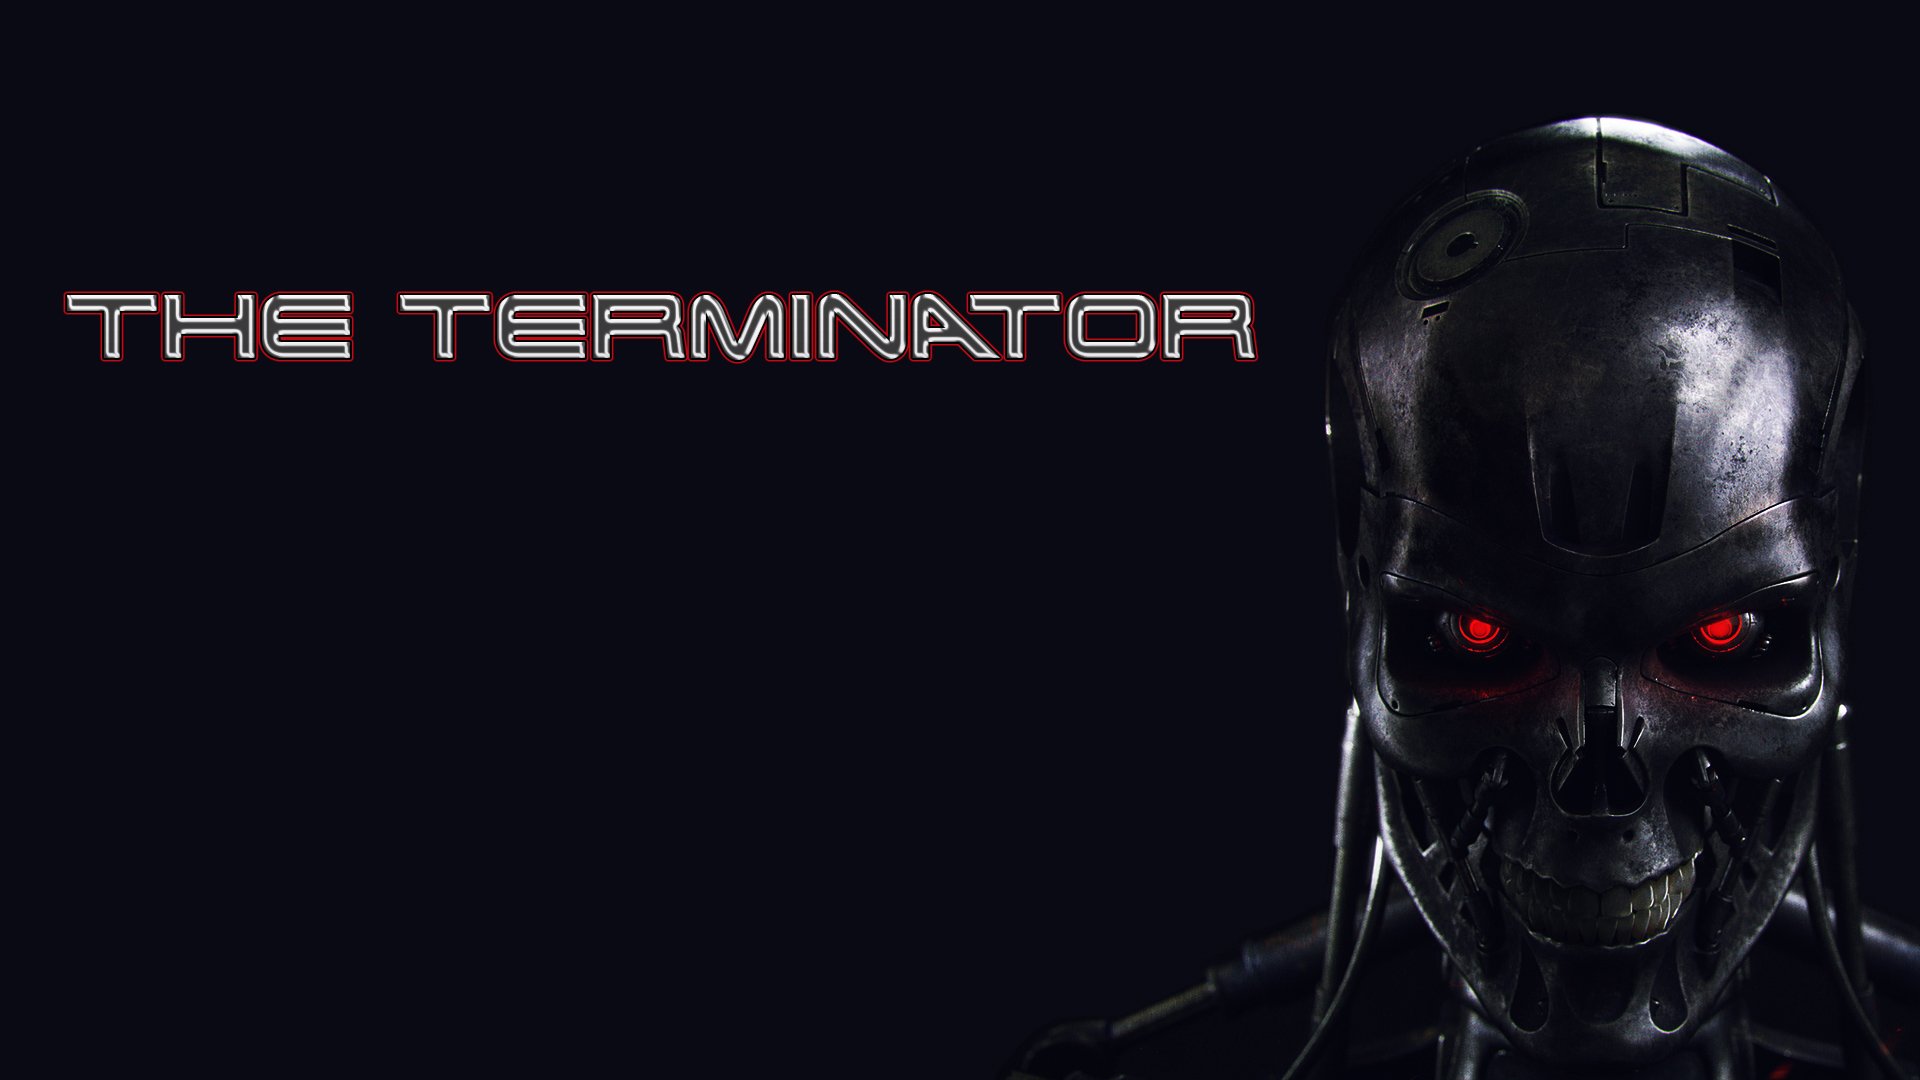 Terminator Robot Wallpaper Hd